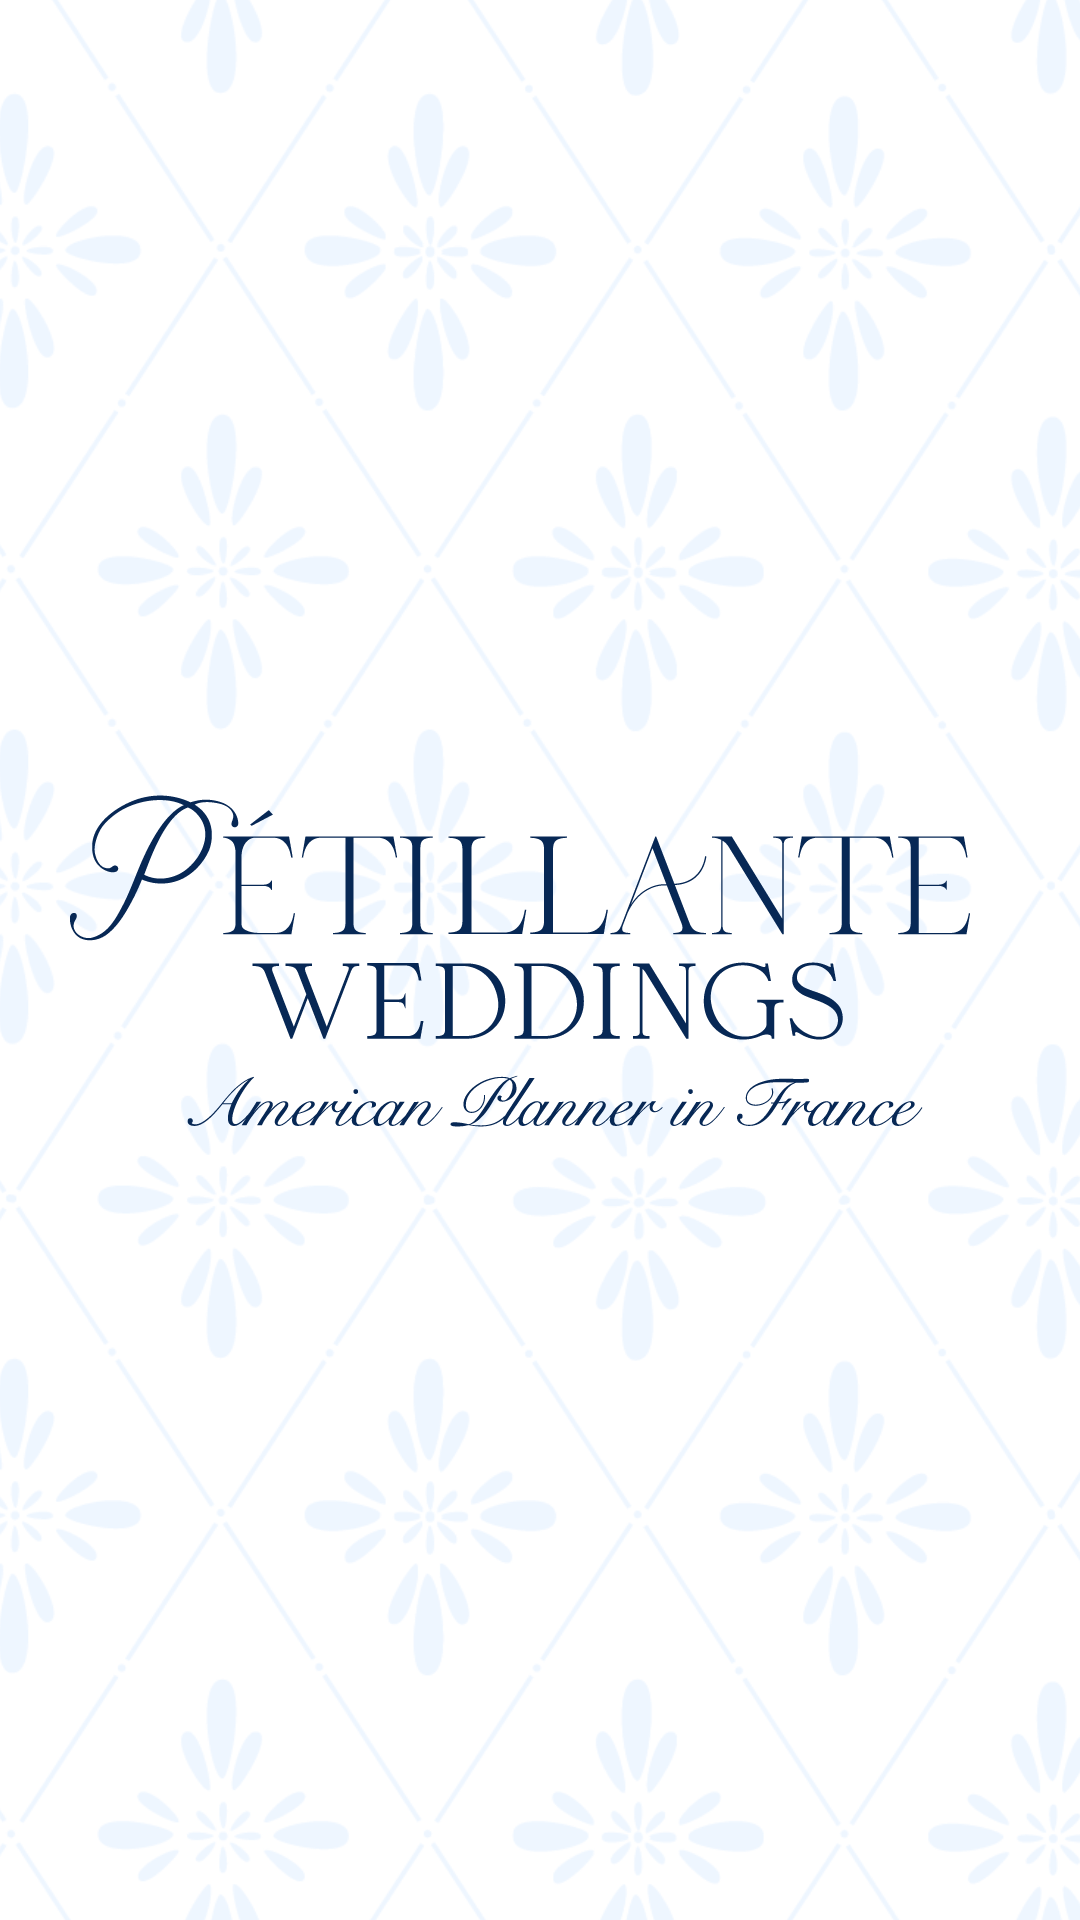 Logo Design for Pétillante Weddings, a wedding planner in France